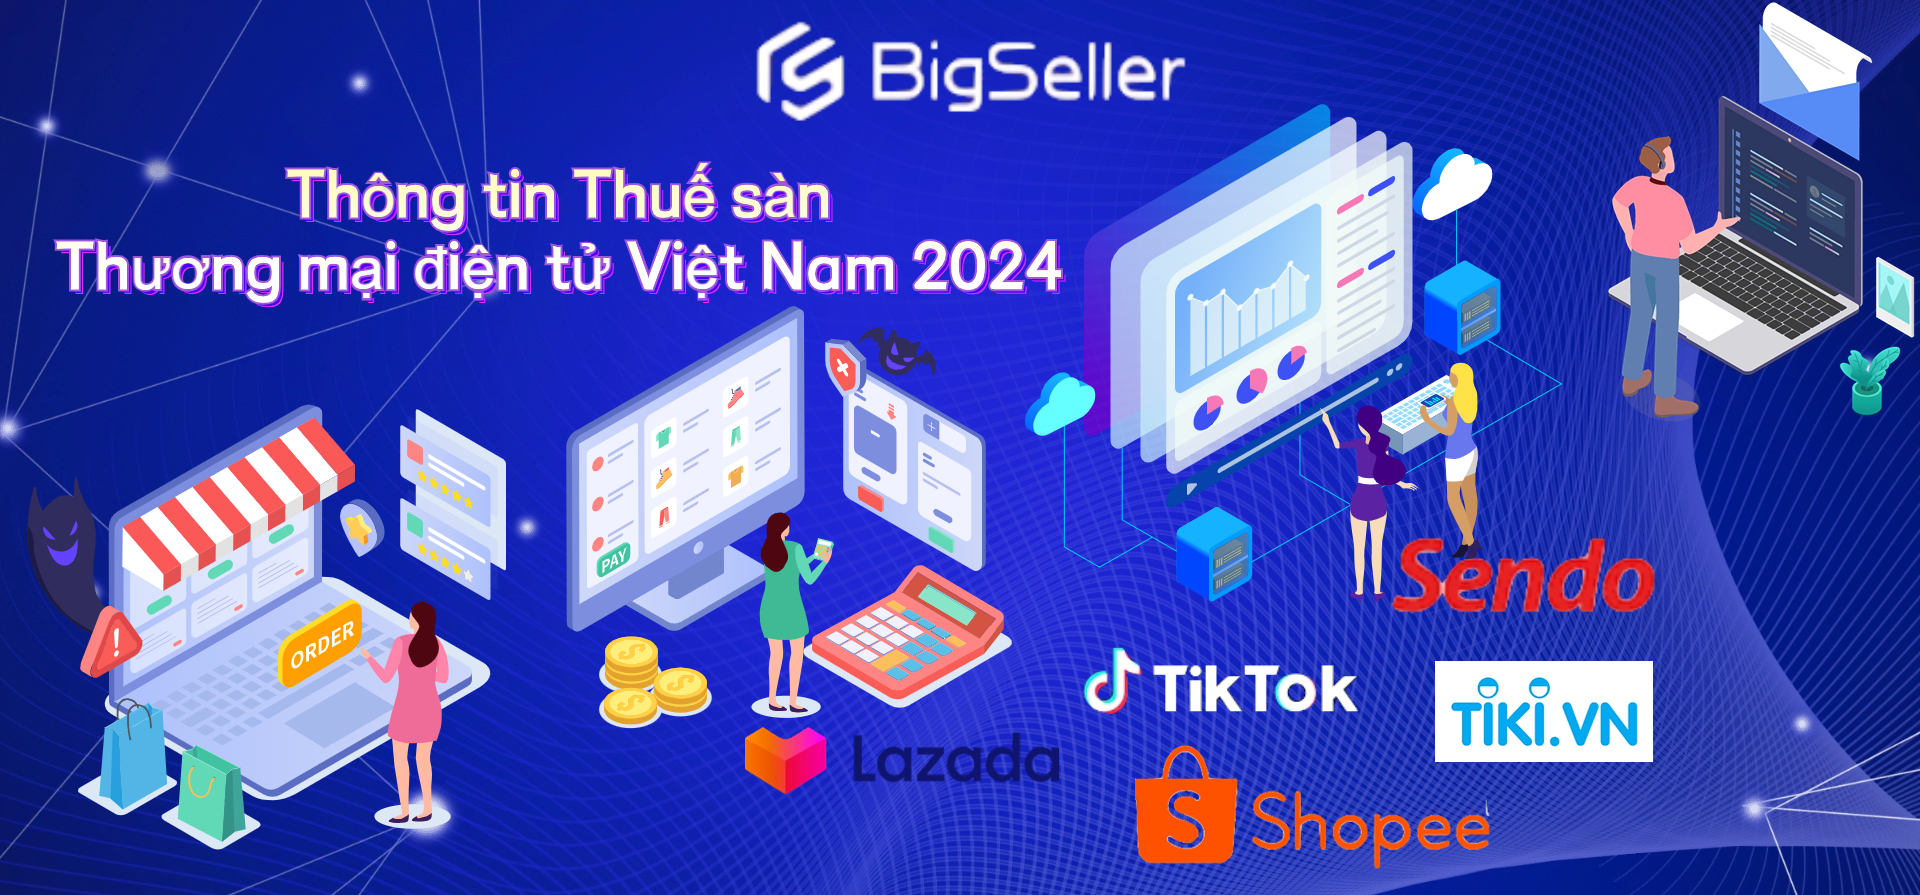 Thông tin Thuế sàn Thương mại điện tử Việt Nam năm 2024